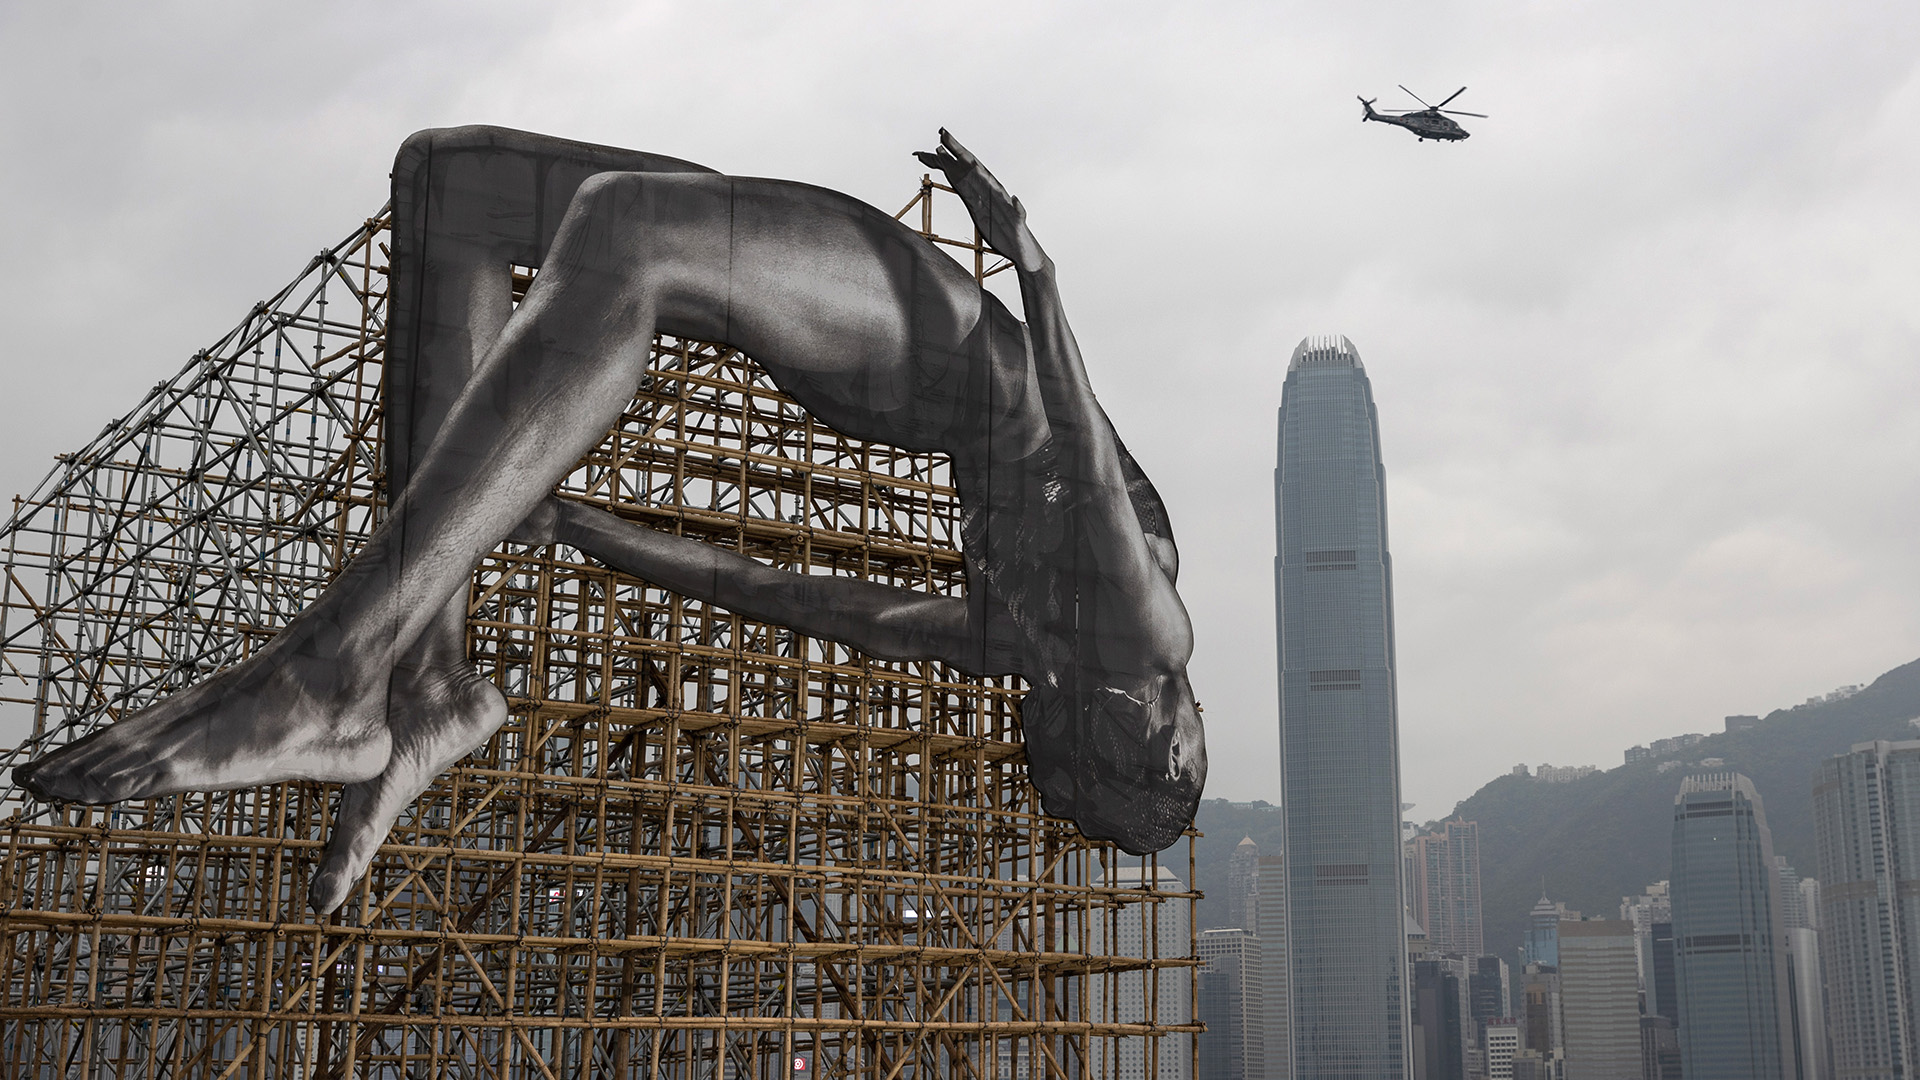 Die Installation "GIANTS: Rising Up" in Hongkong zeigt einen überlebensgroßen Hochspringer | EPA